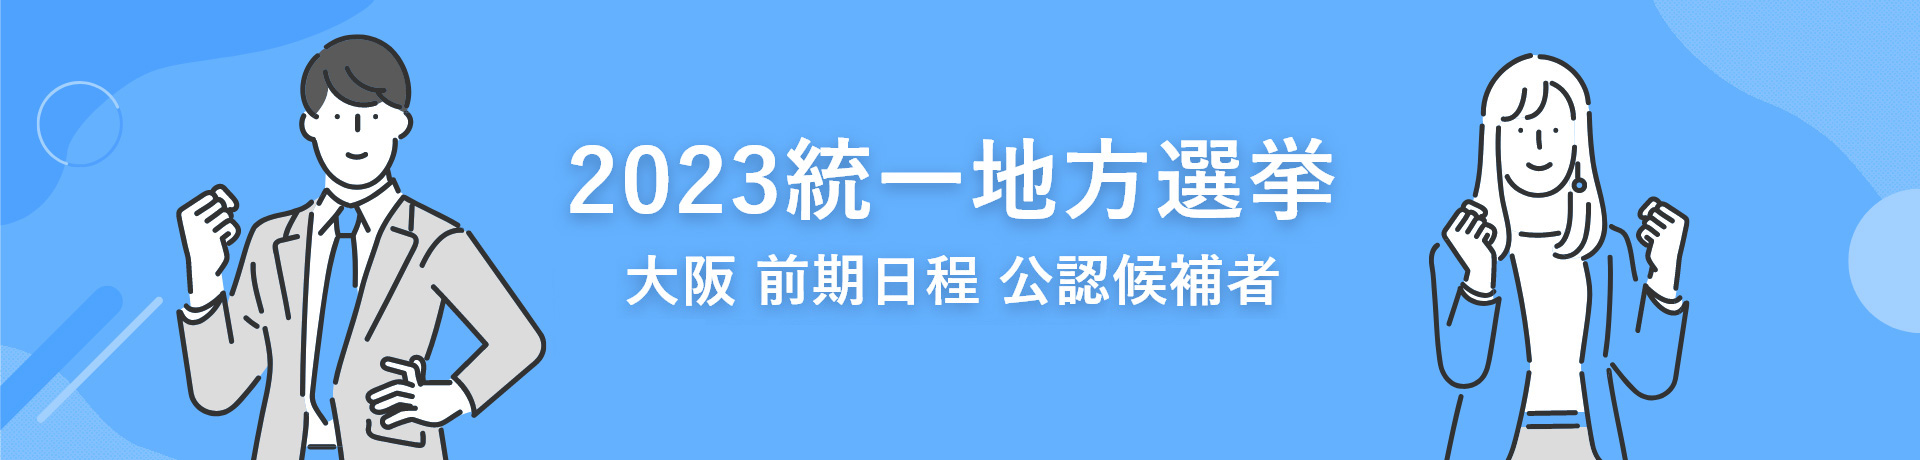 2023統一地方選挙 大阪 前期日程 公認候補者